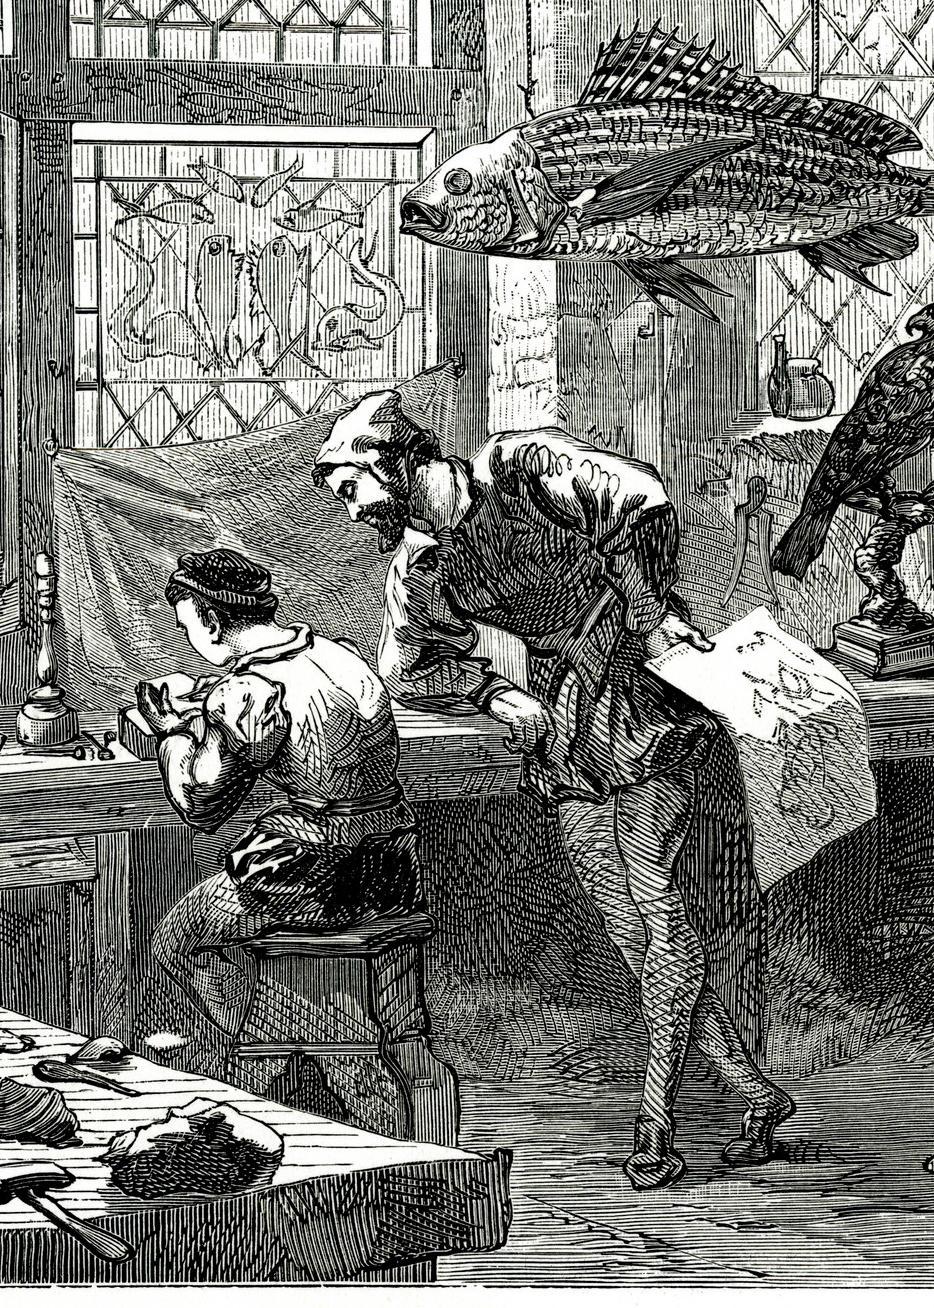 Mann følgjer med på ung gut som sit og teiknar i eit rom med utstoppa dyr og verktøy. Personane er kledde i typiske 1500-tallsklede. Illustrasjon.